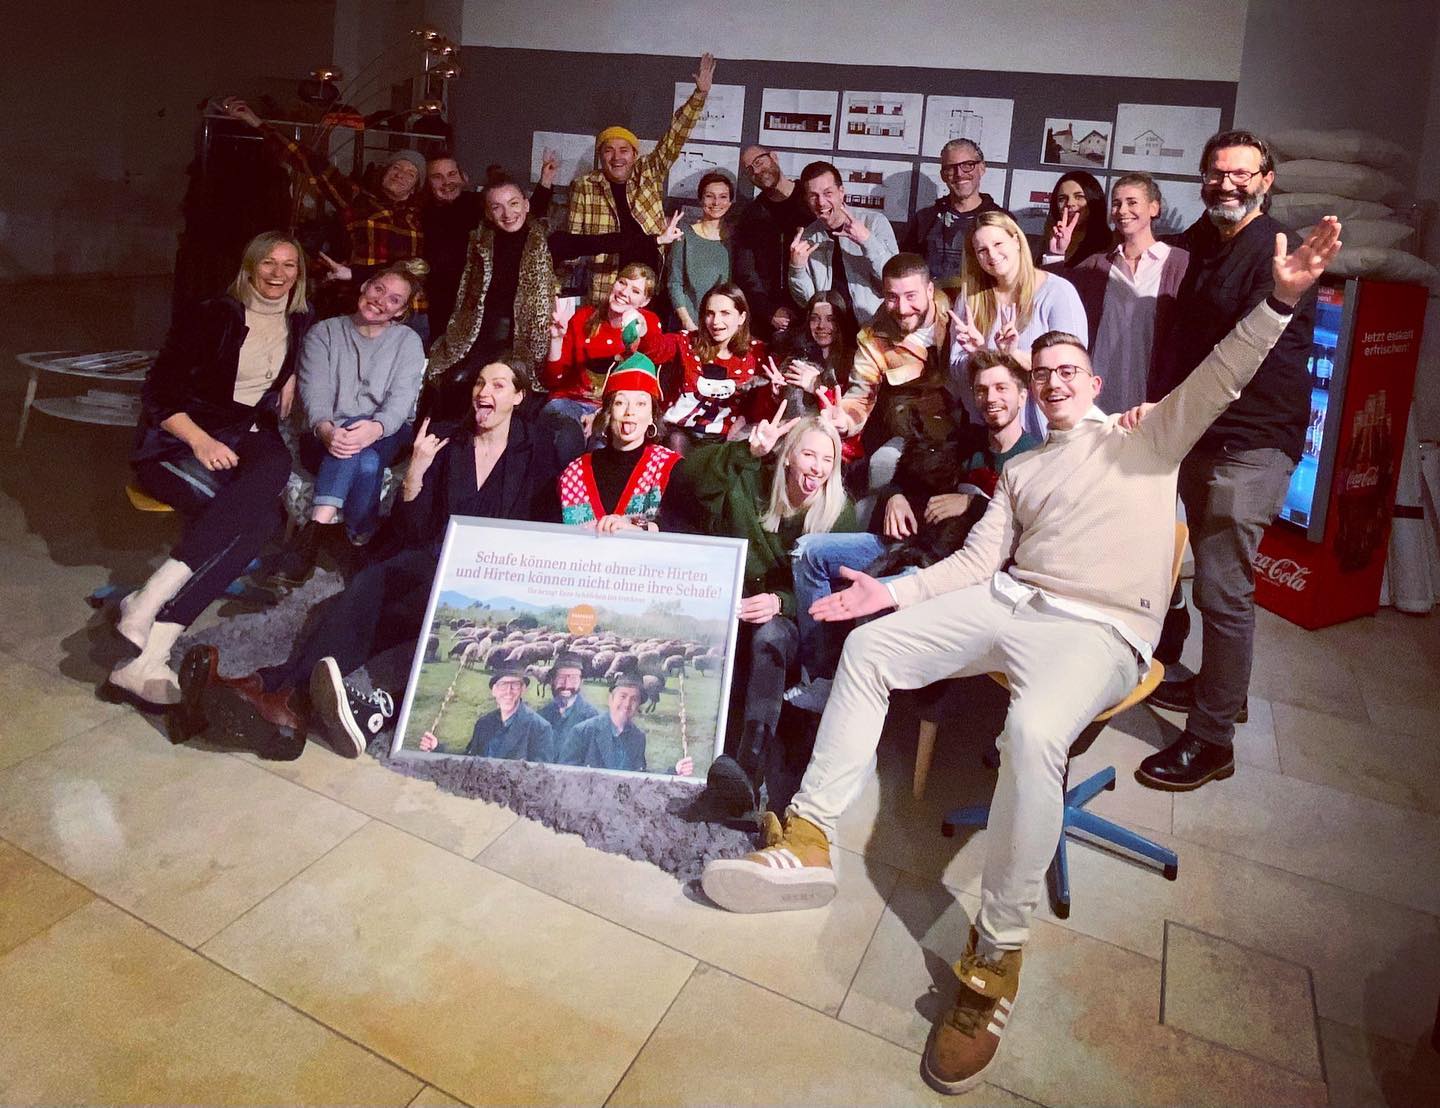 @mahavi_group Weihnachtswichteln
Wir wünschen Euch allen ein schönes Weihnachtsfest 🎄♥️
.
.
.
#mahavi #mahavigroup #gemeinsamstark #family #ffb #bruck#fuerstenfeldbruck #heimat #love#happy #gastro #gastronomie #event#festival #locations #good #work #nice #smile #wecomebackstronger #team#teamwork #job #lovely